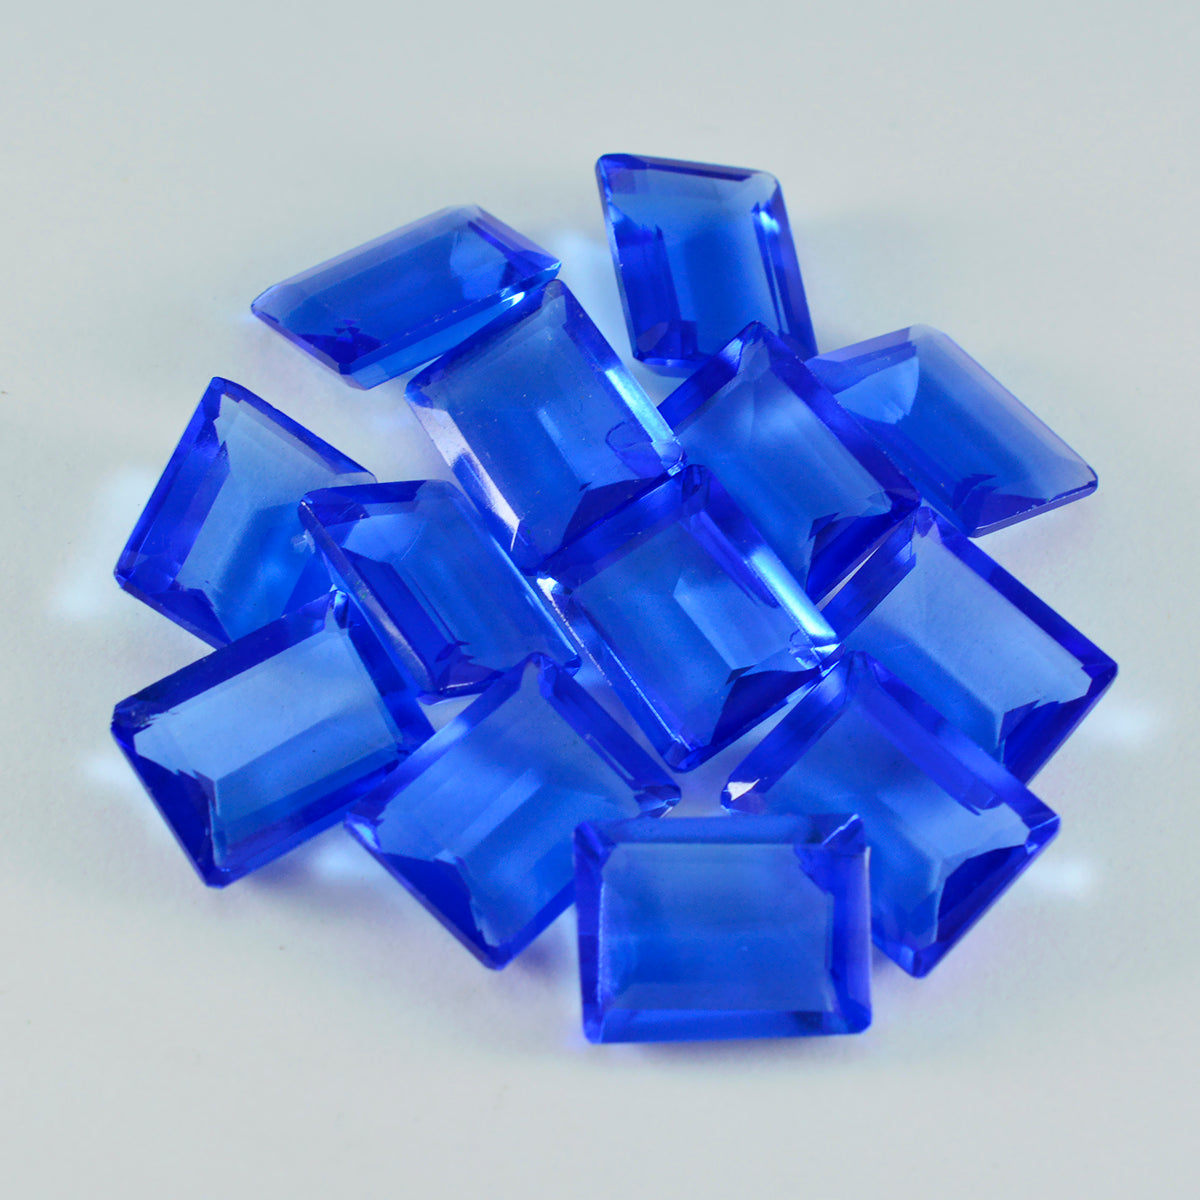 riyogems 1 шт. синий сапфир cz ограненный 10x12 мм восьмиугольная форма драгоценный камень прекрасного качества